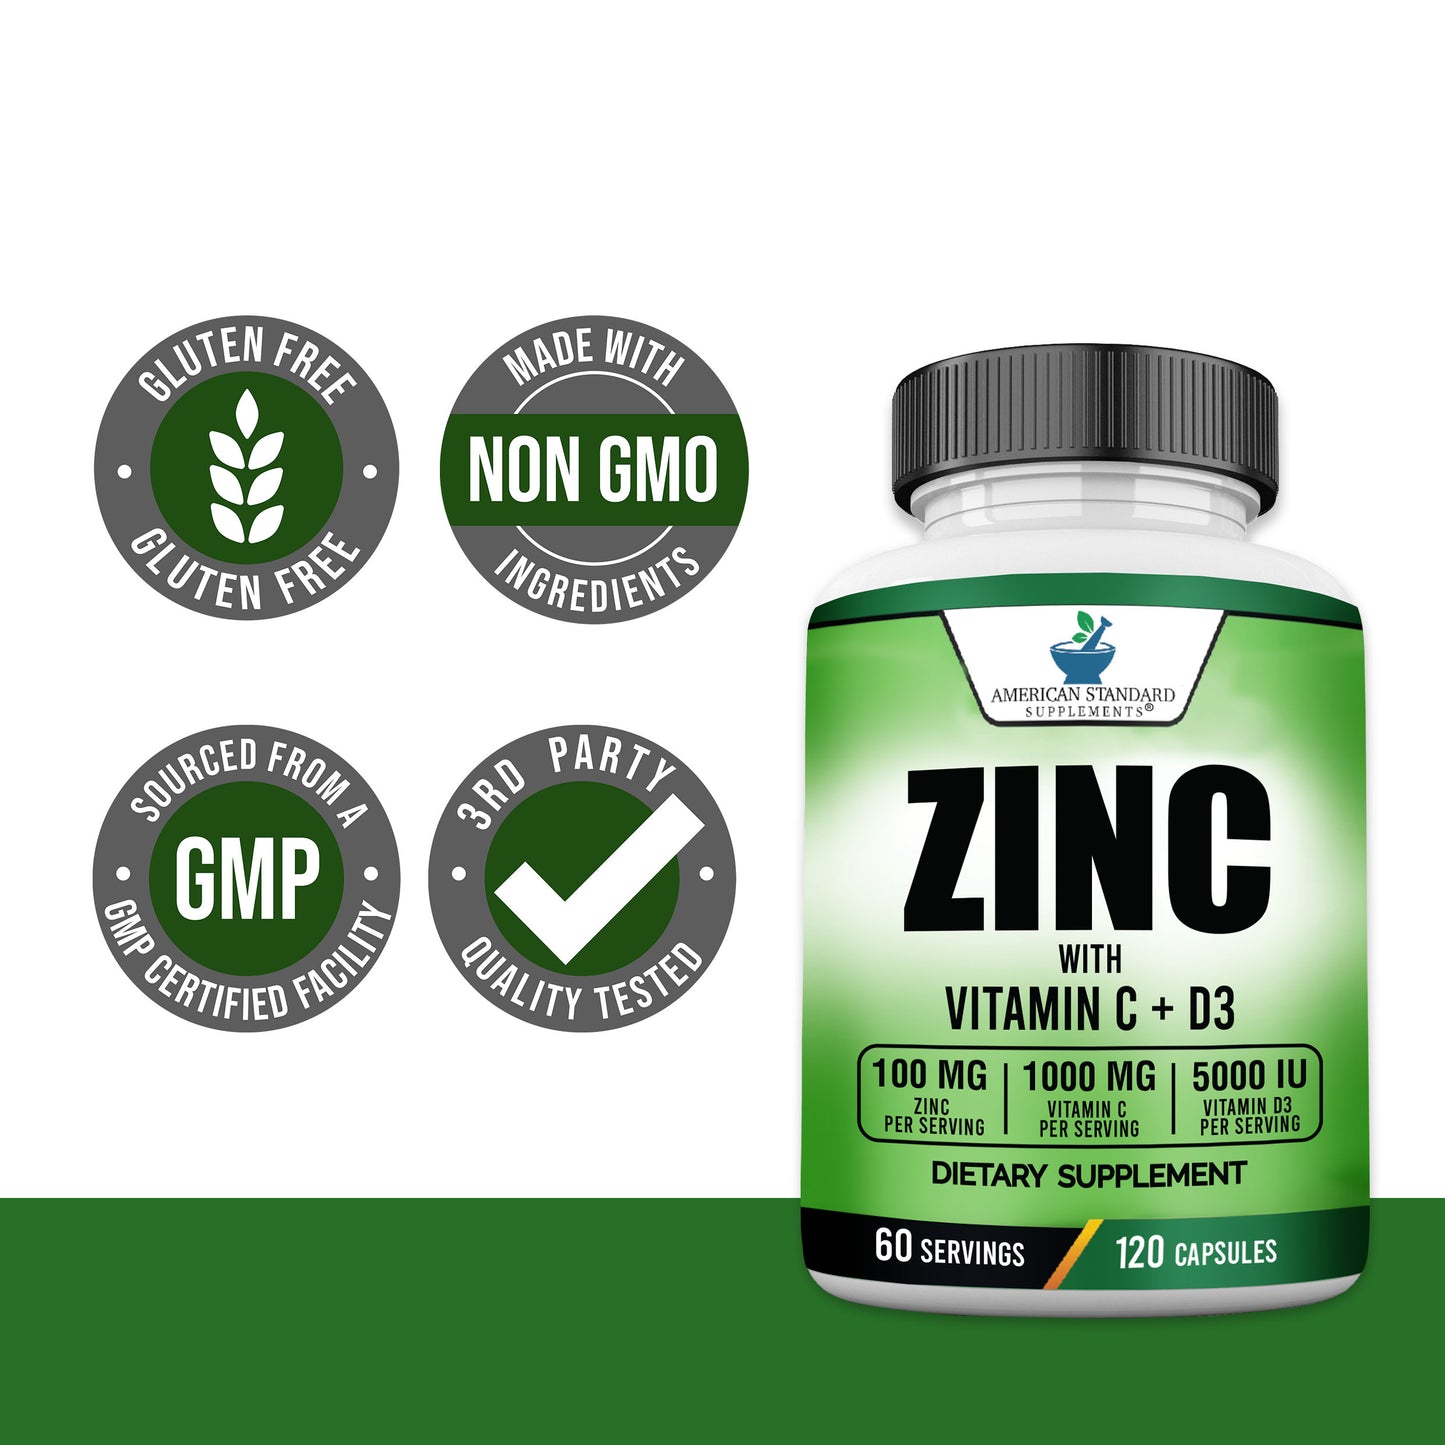 Zinc 100mg, Vitamin C 1000mg, Vitamin D3 5000IU Per Serving - American Standard Supplements